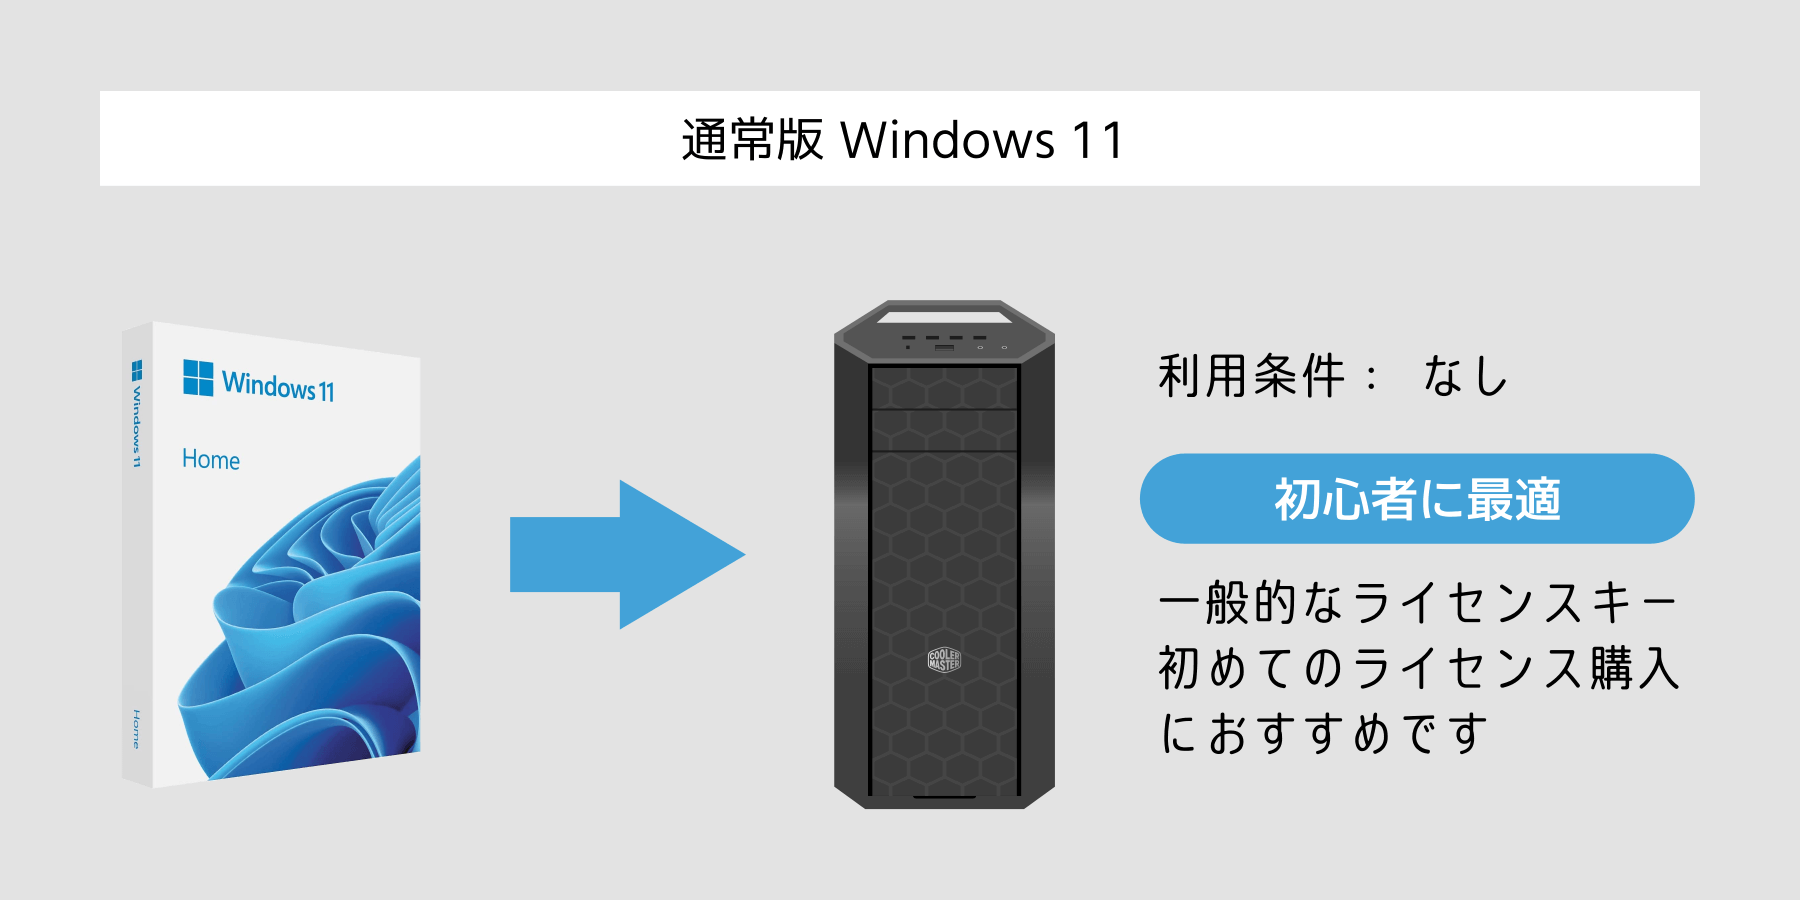 通常版 Windows 11 のライセンスキー【初心者向け】